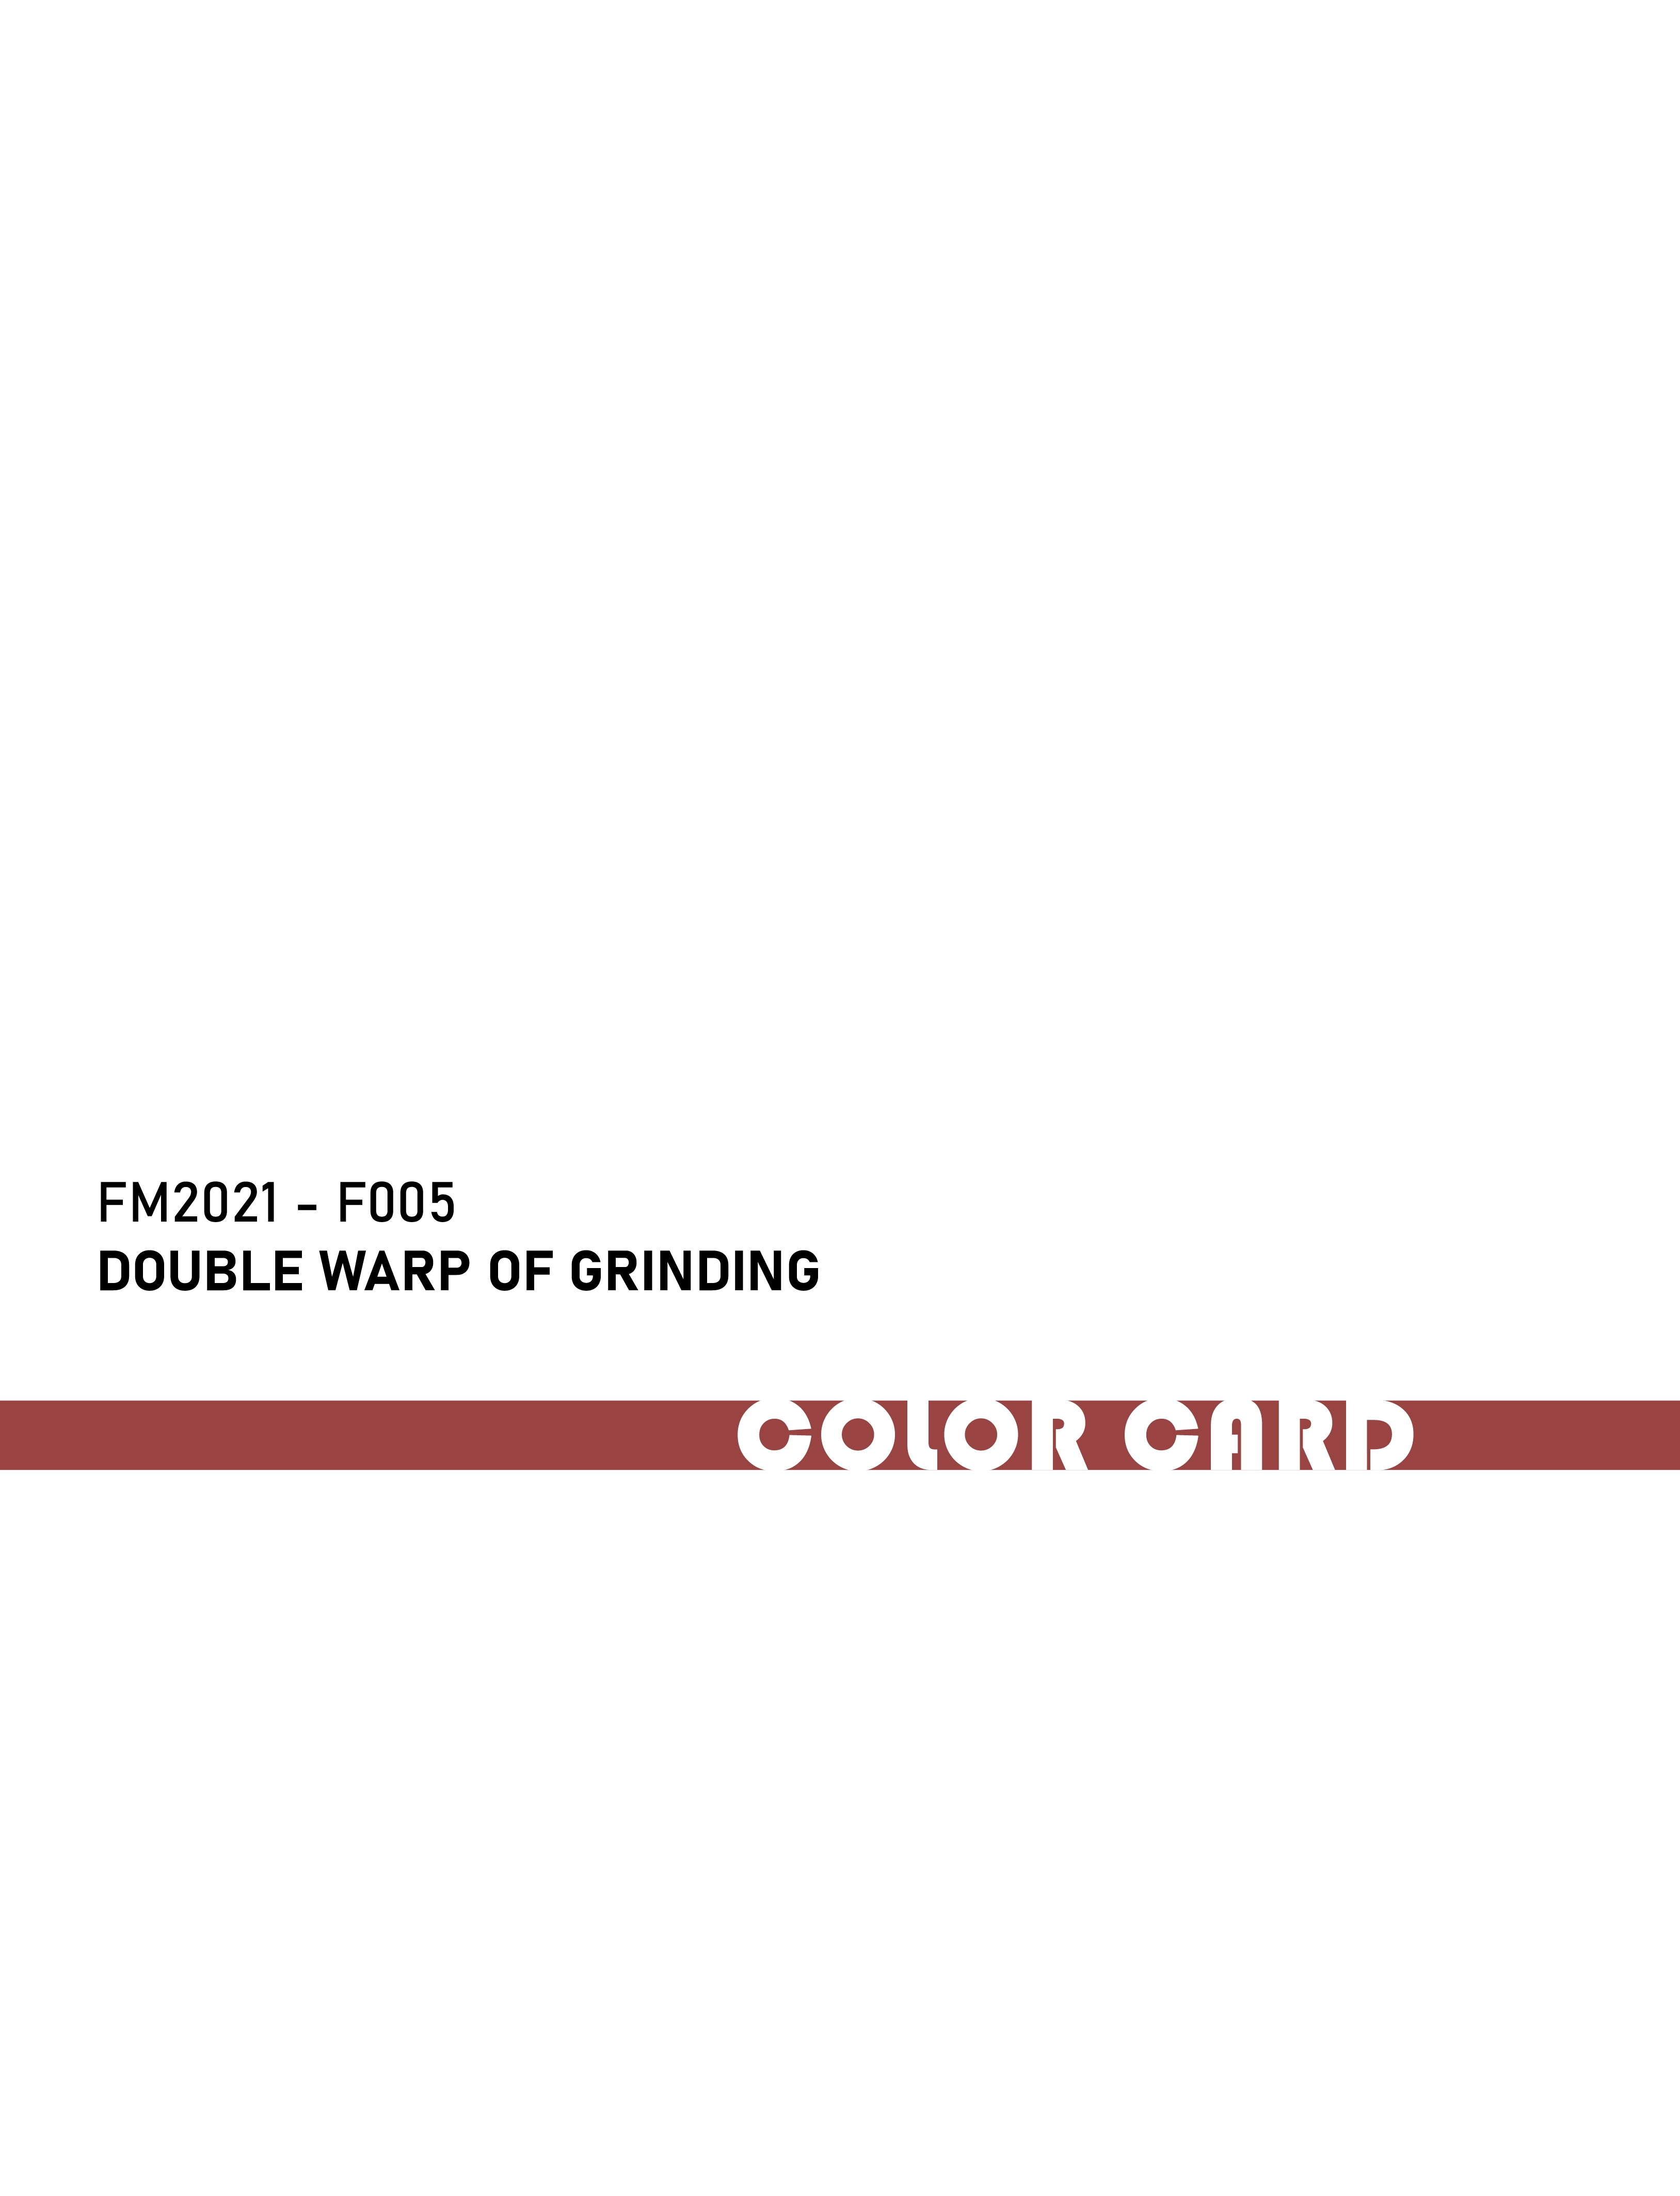 FM2021-F005 Doppel wickel des Schleifens